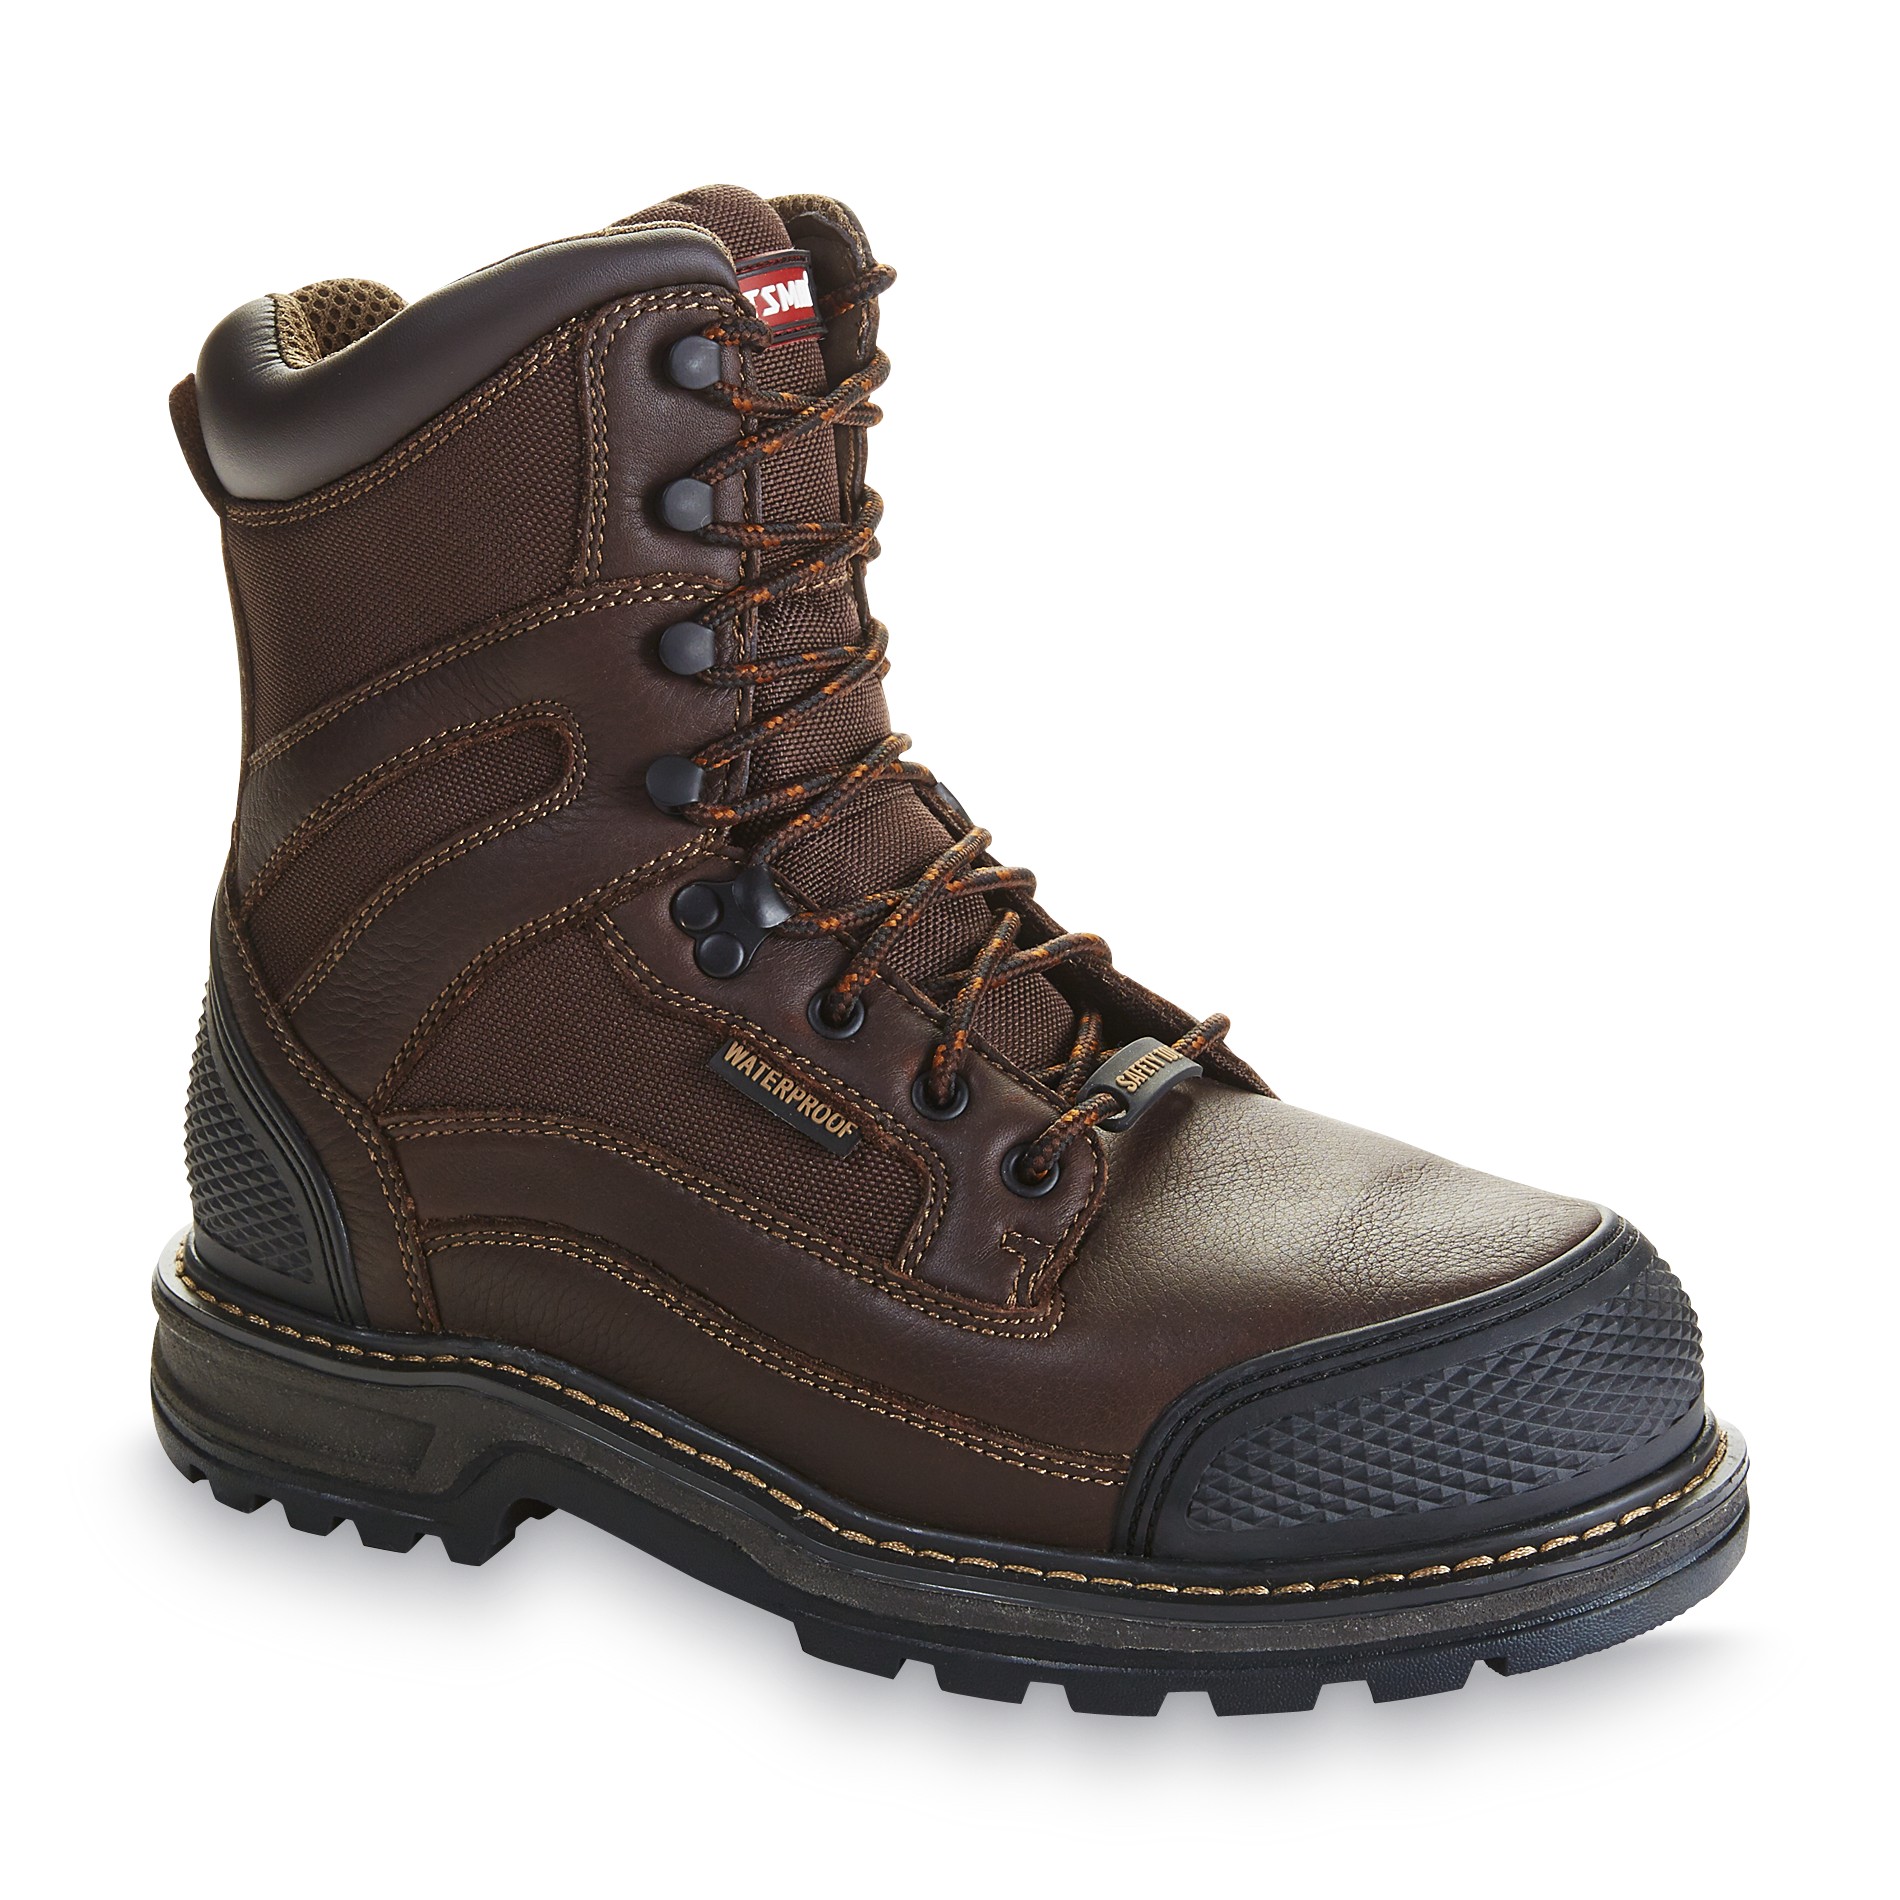 Craftsman Men's Kryptor Brown Leather Steel Toe 8" Work Boot - Wide Width